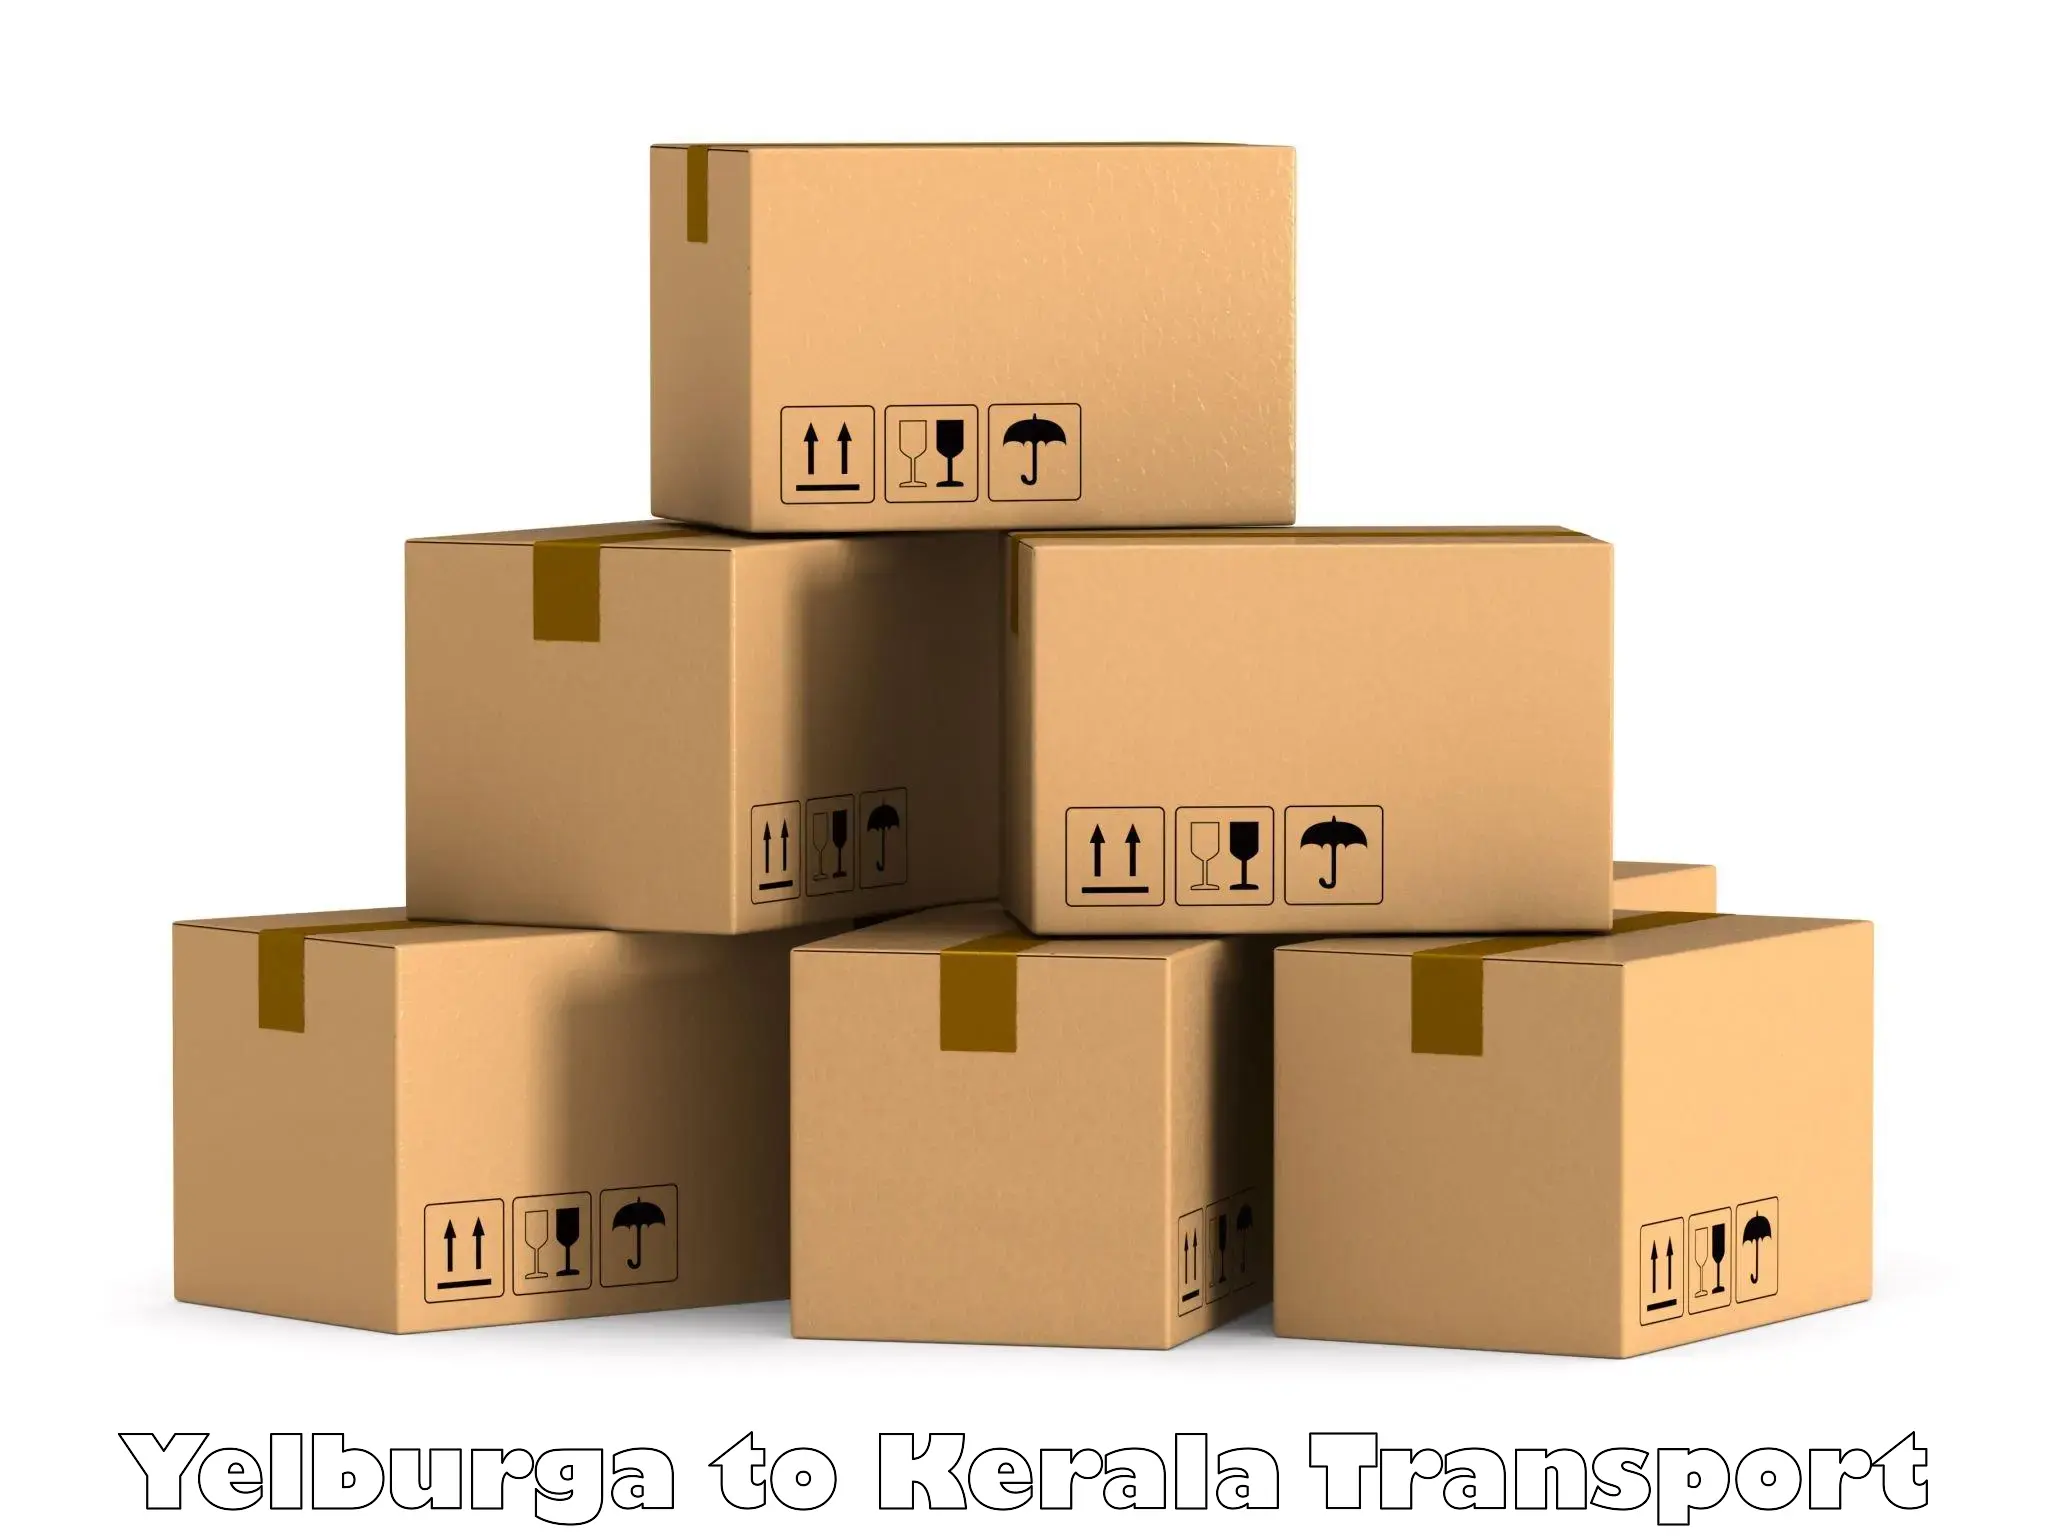 Vehicle parcel service Yelburga to Chungatra